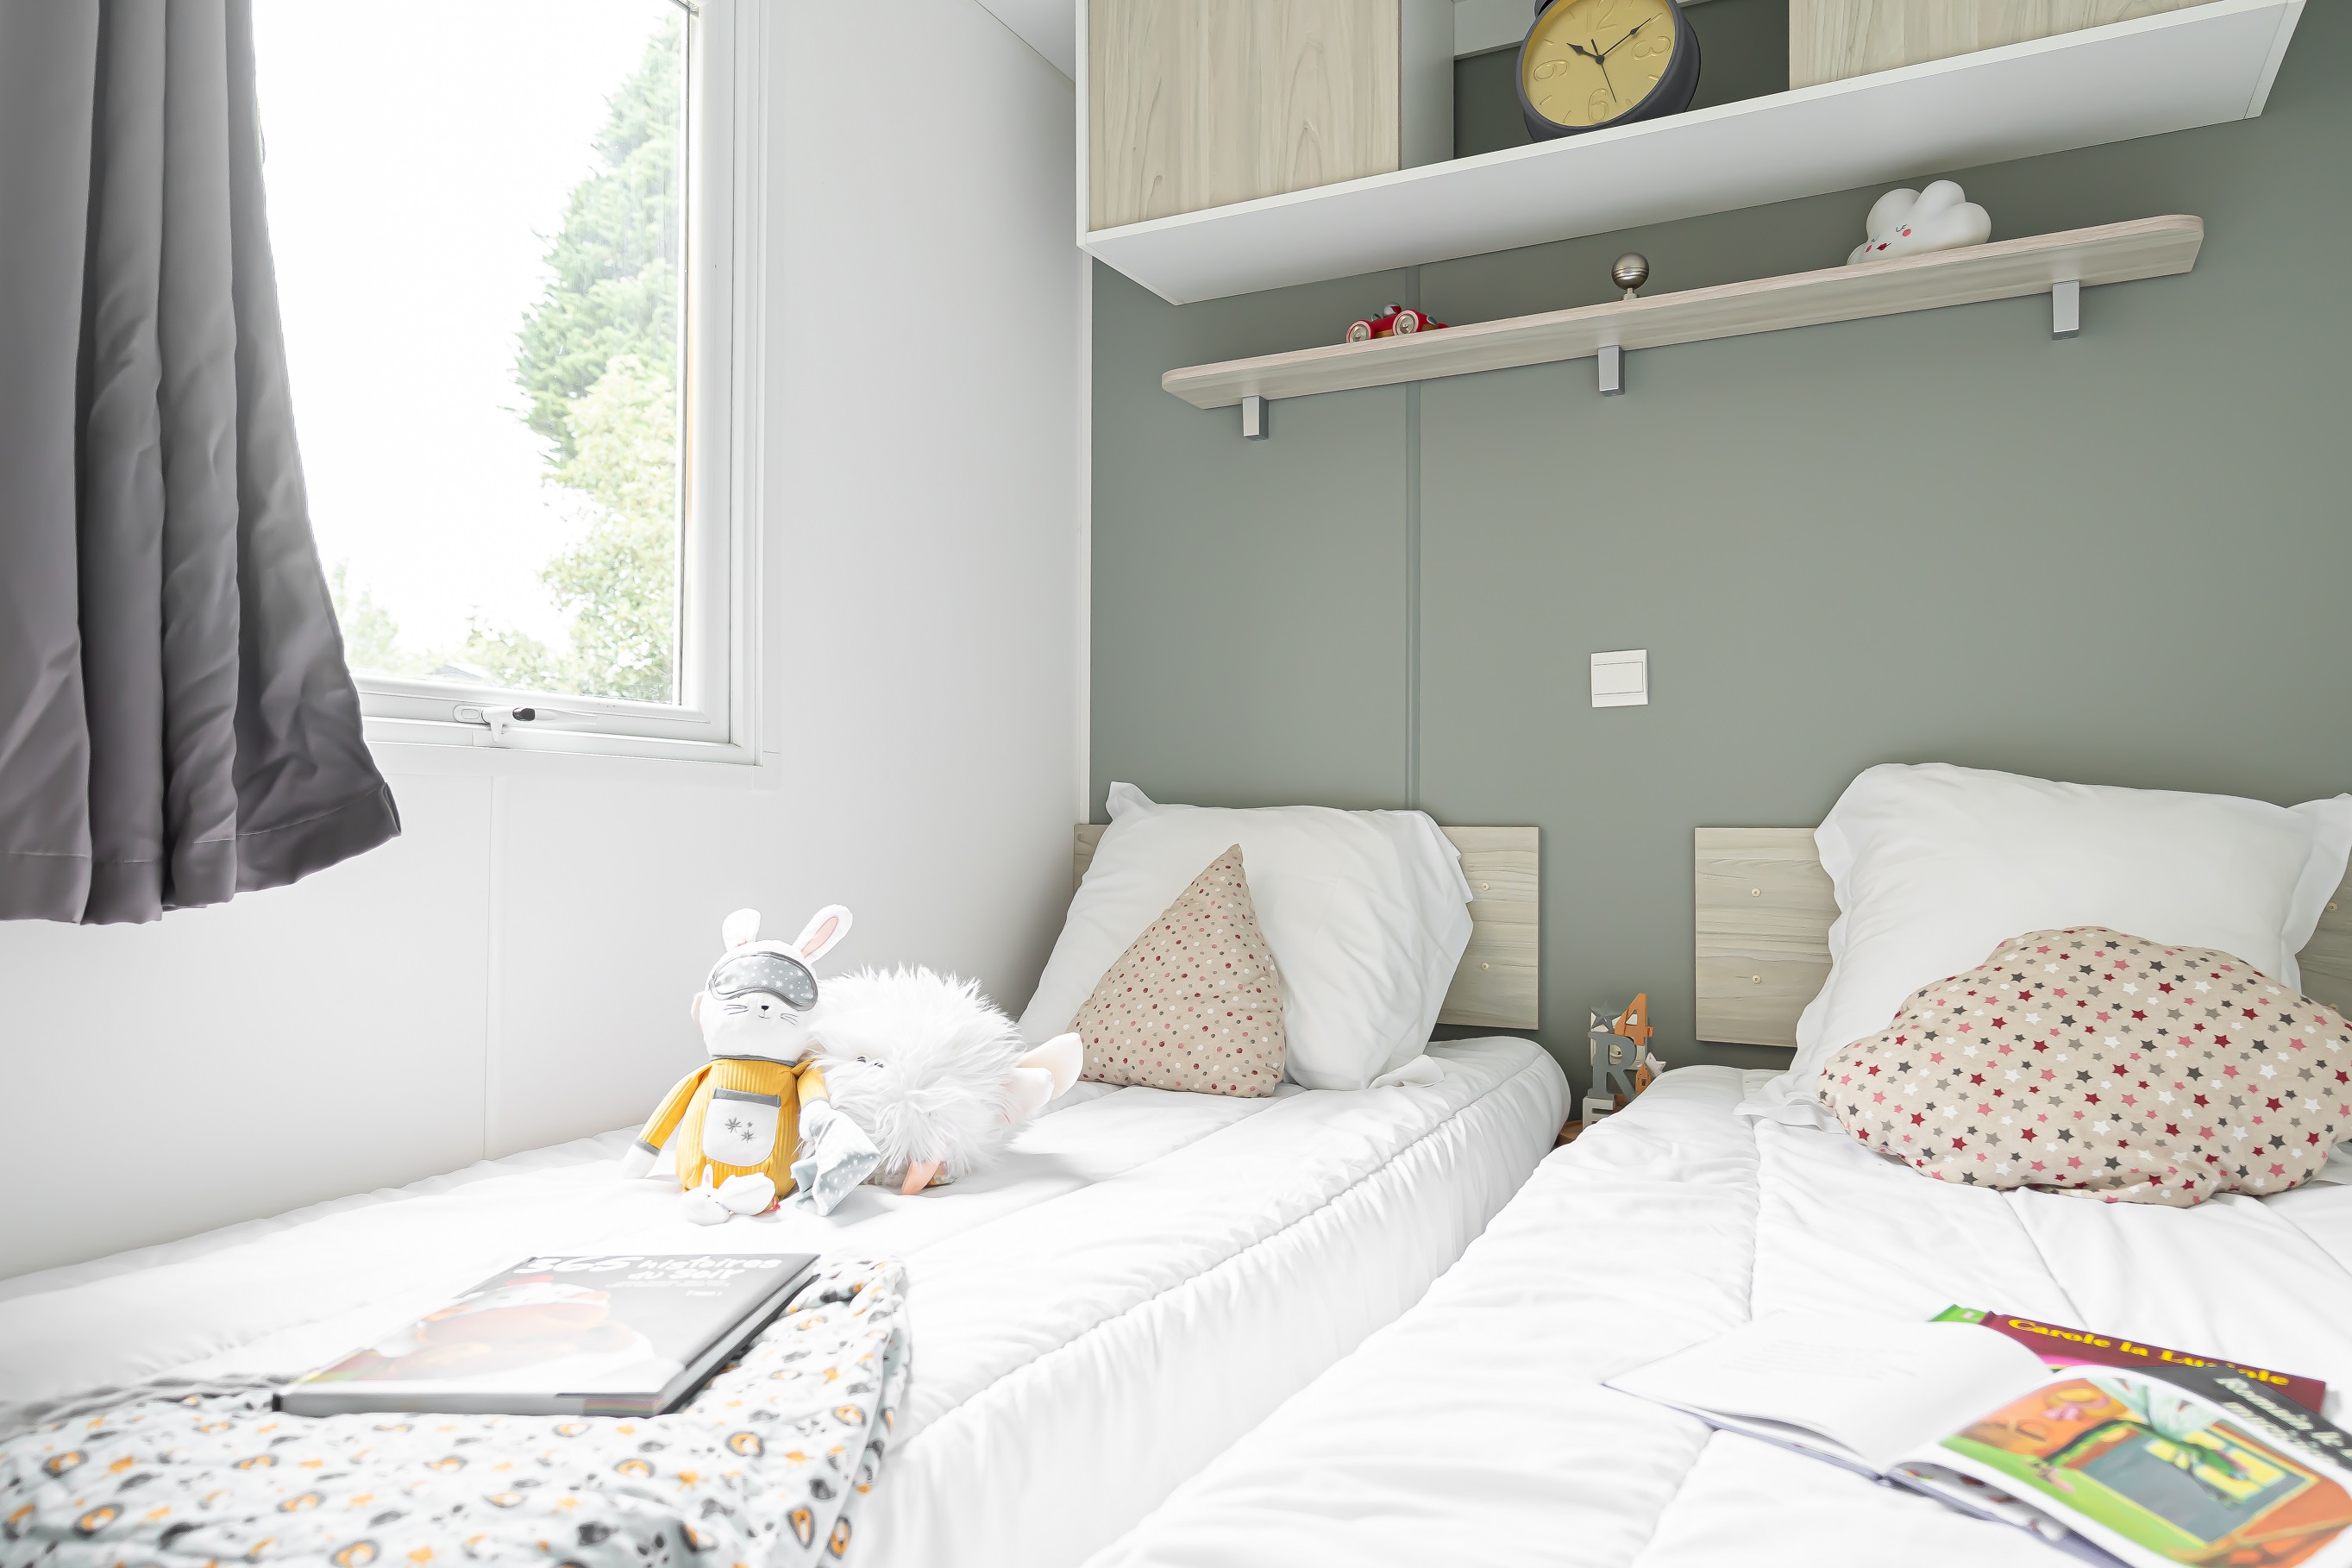 Cottage Premium – 40 m² – 2 bathrooms – 3 bedrooms 4/6 Ppl.